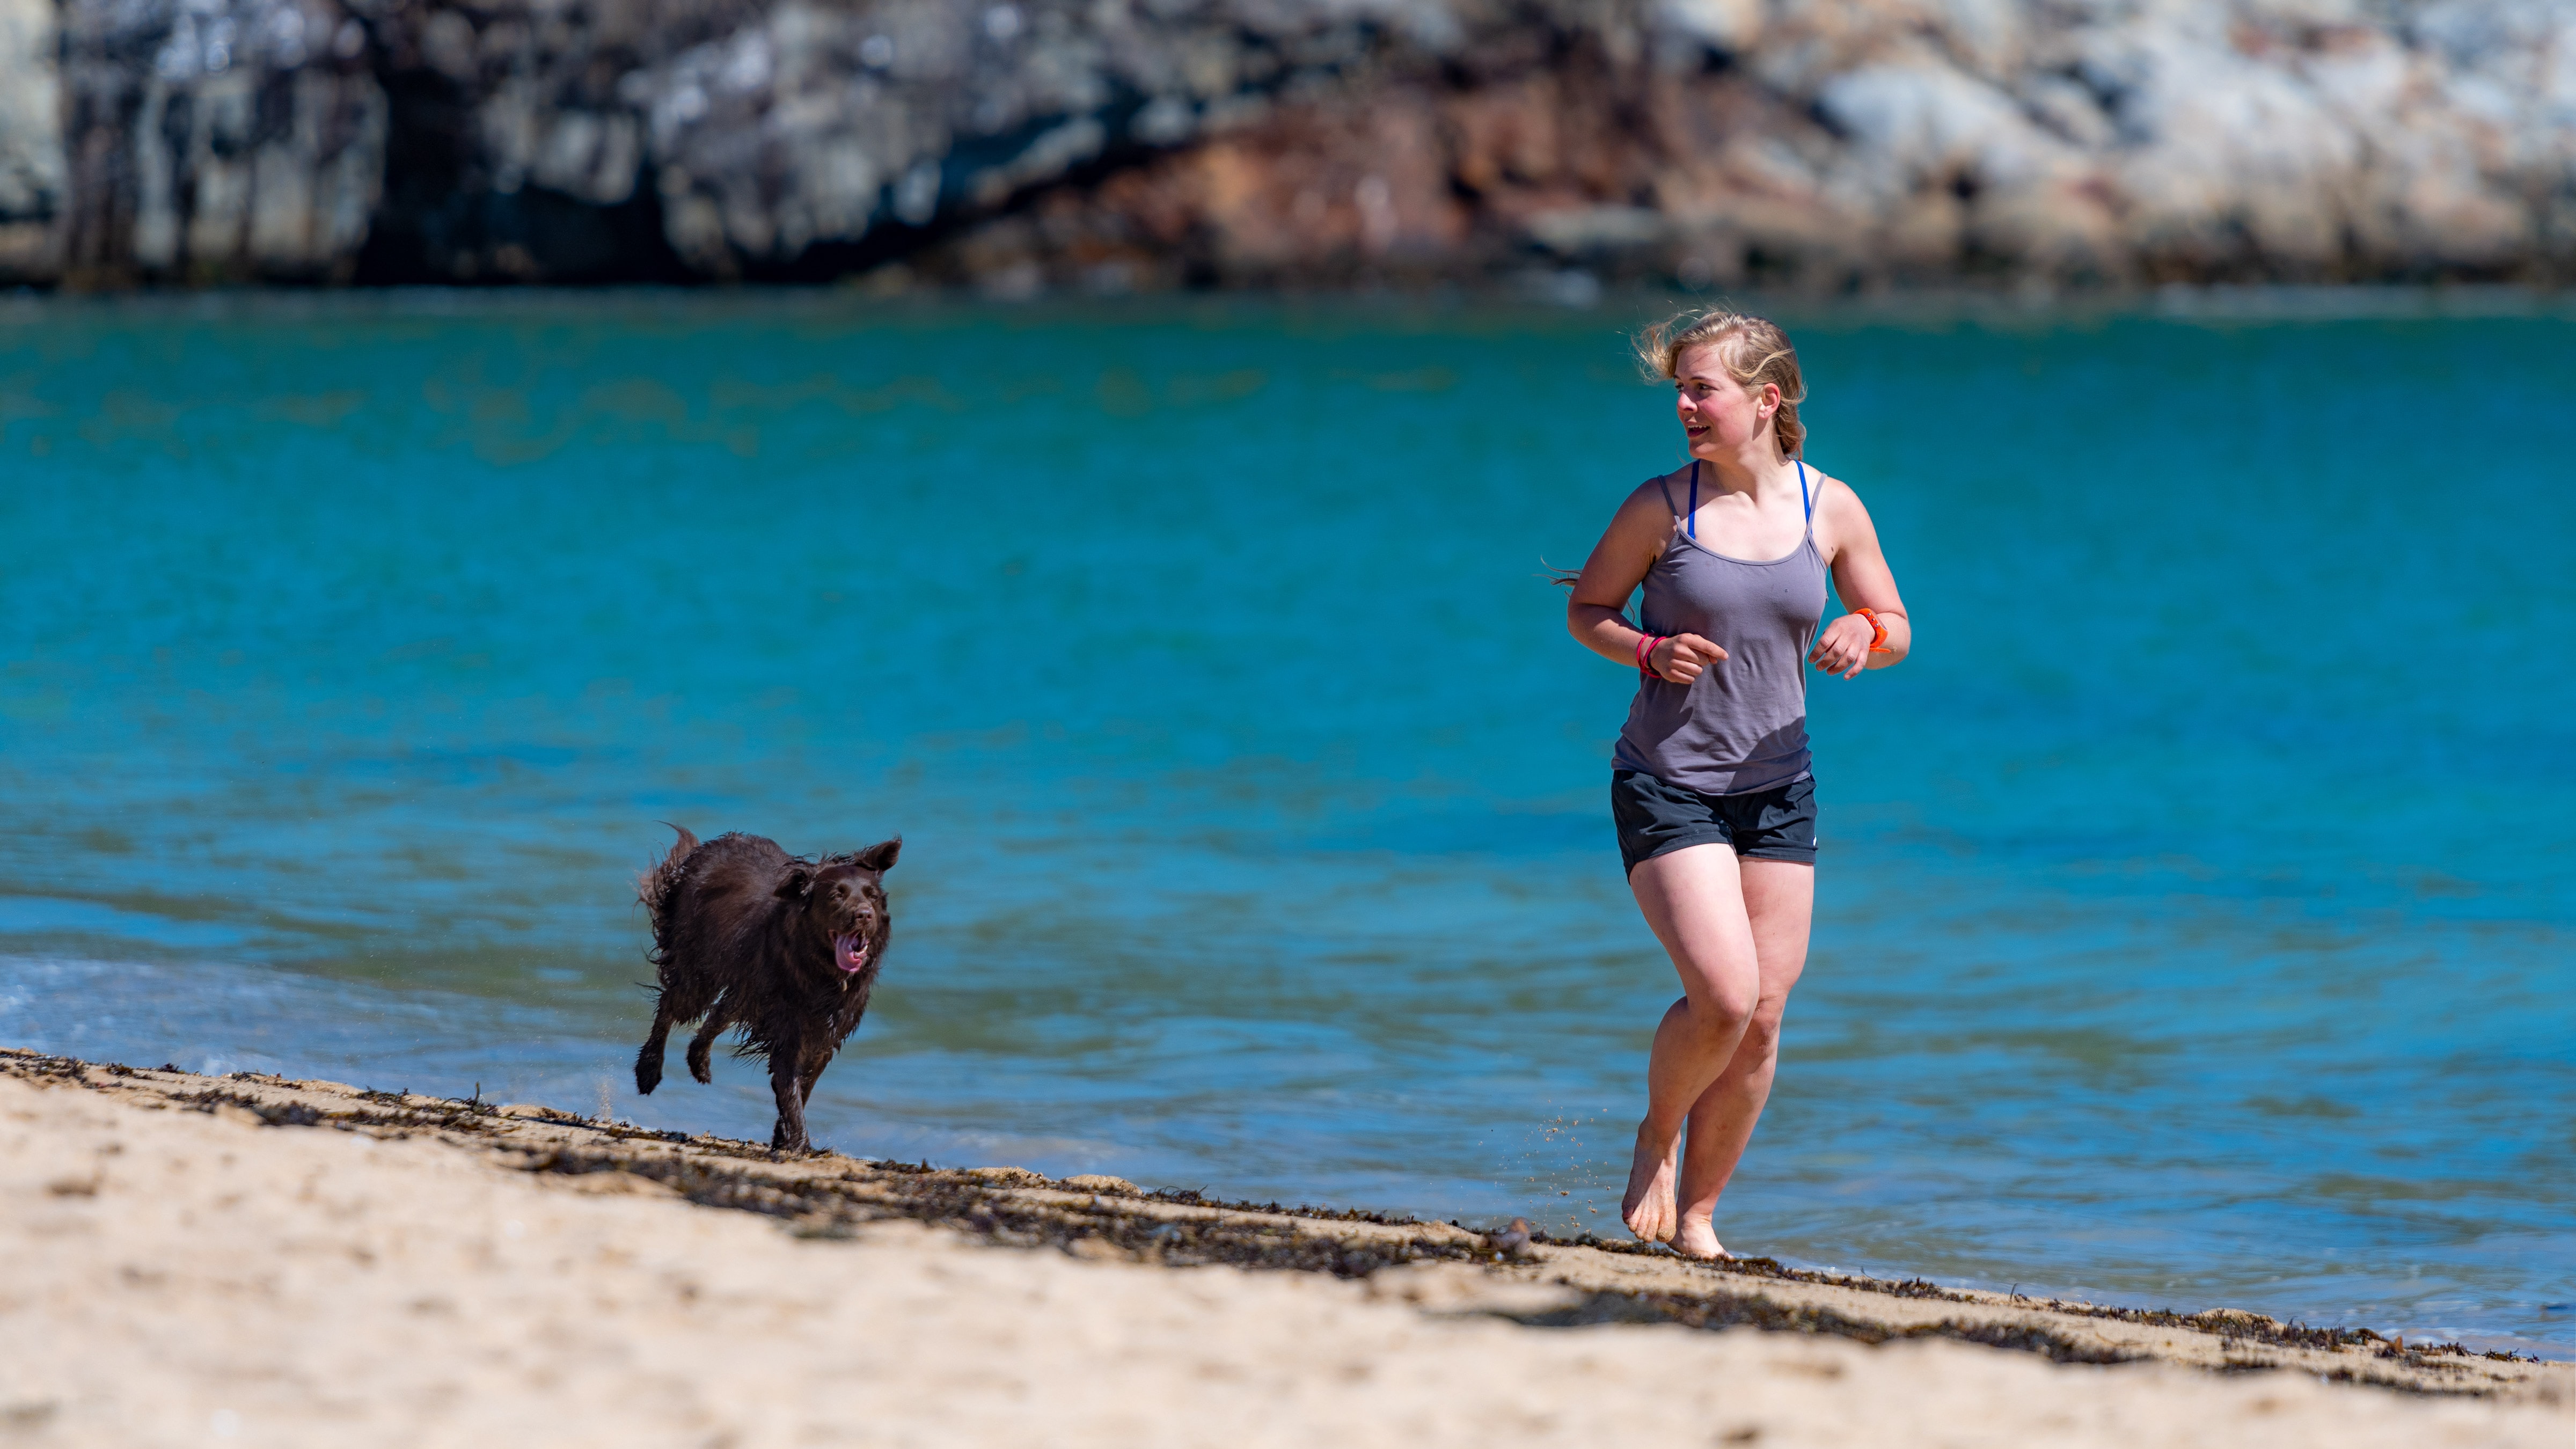 Comment réagir face à un chien lors d'un jogging ? – Athlétic